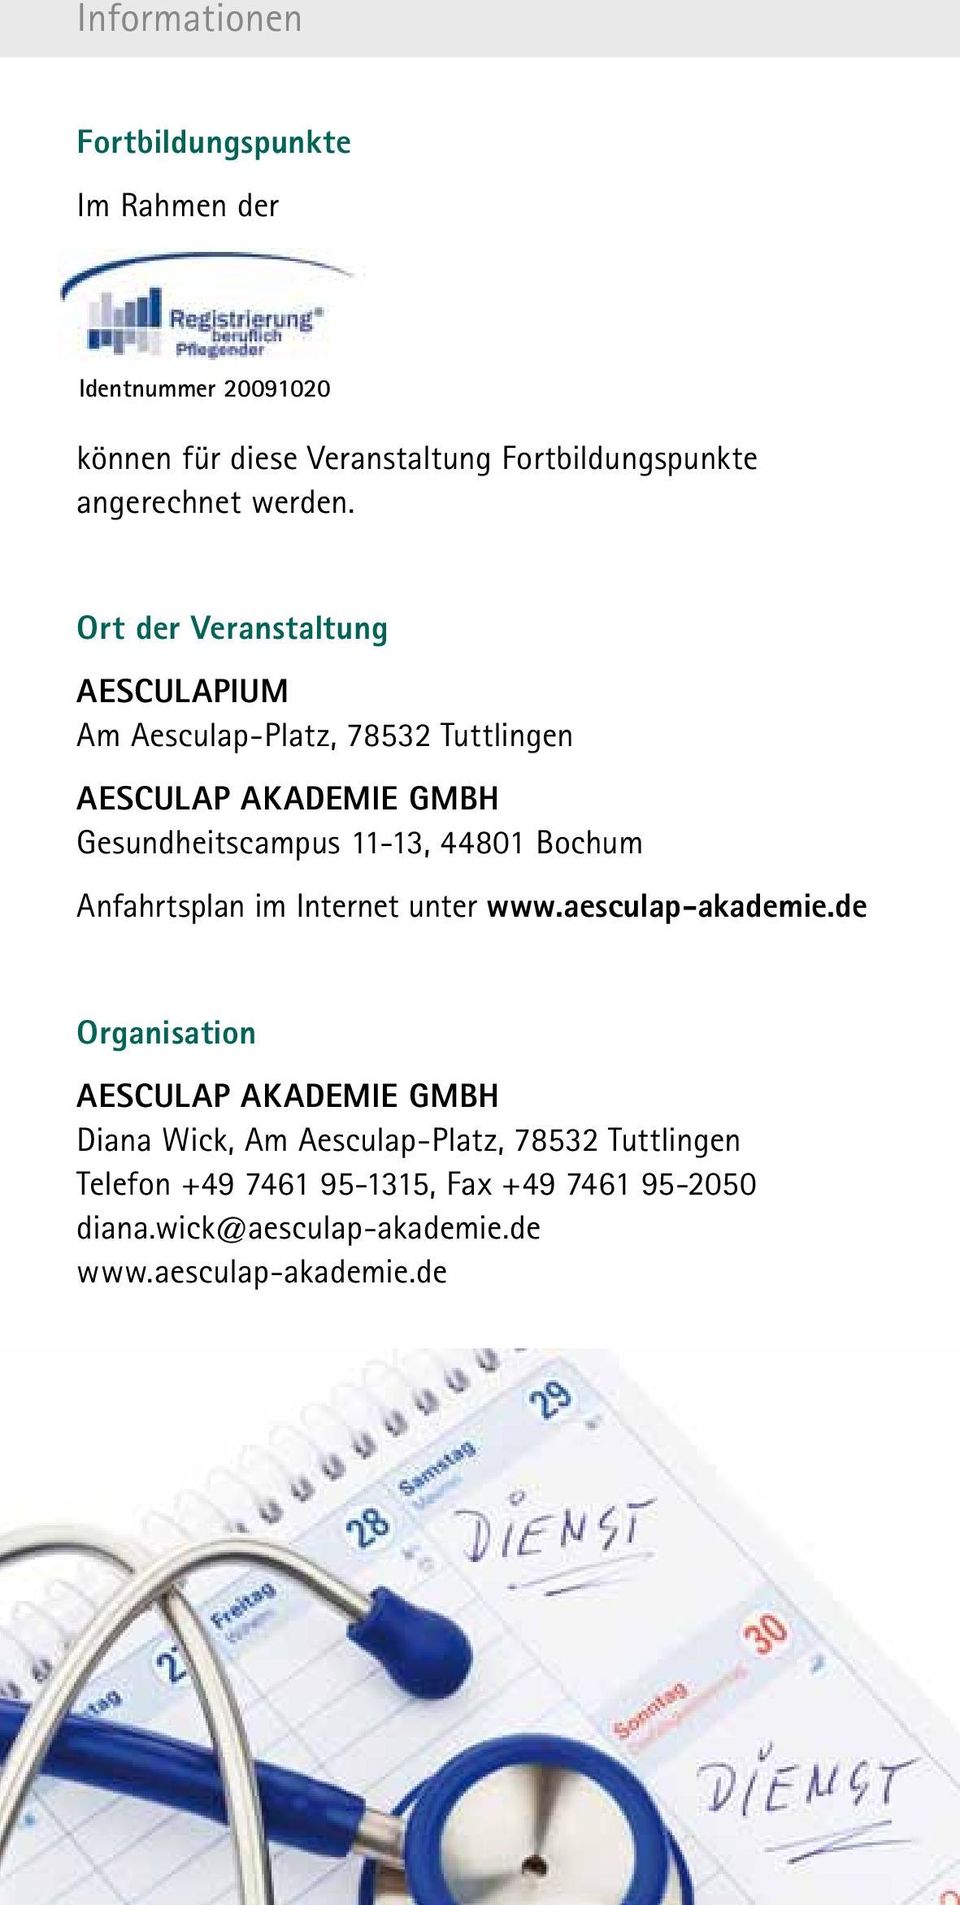 Ort der Veranstaltung Aesculapium Am Aesculap-Platz, 78532 Tuttlingen Gesundheitscampus 11-13, 44801 Bochum